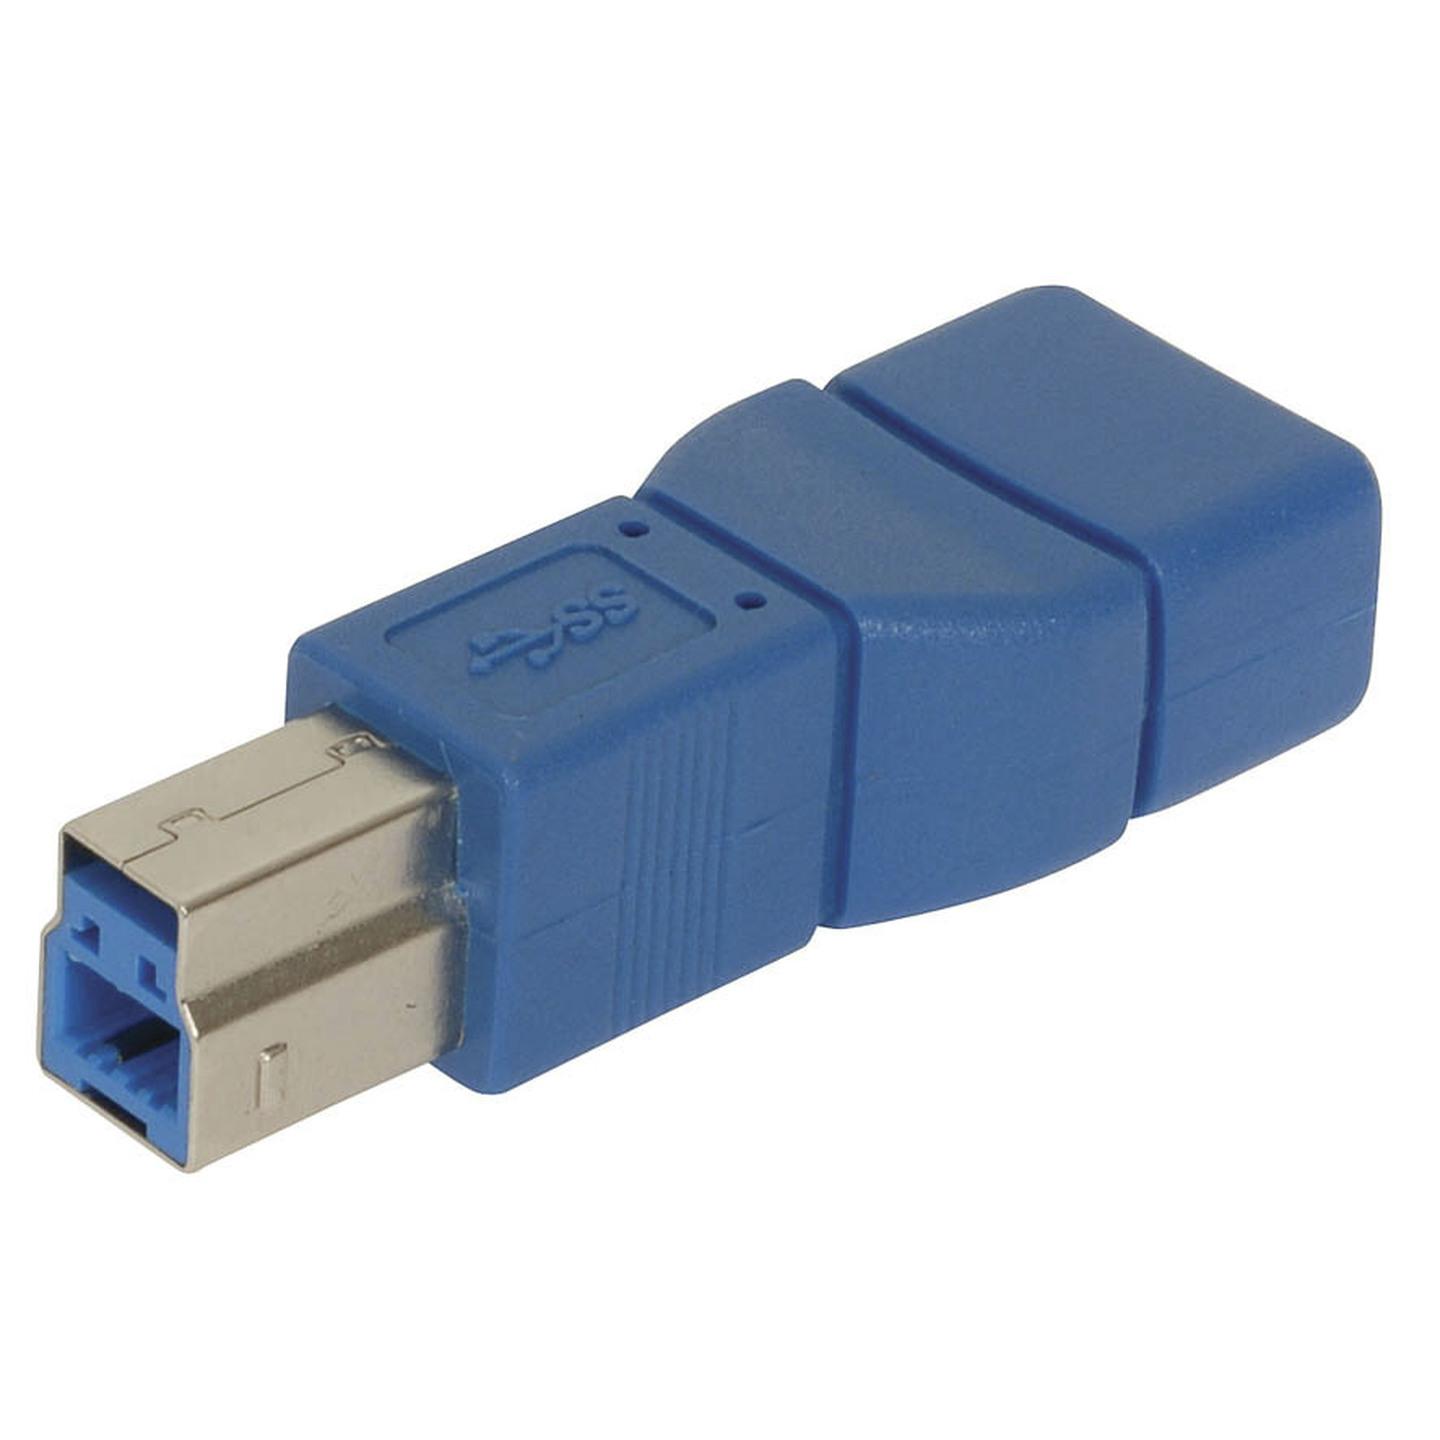 USB 3.0 Plug B to Socket A Adaptor